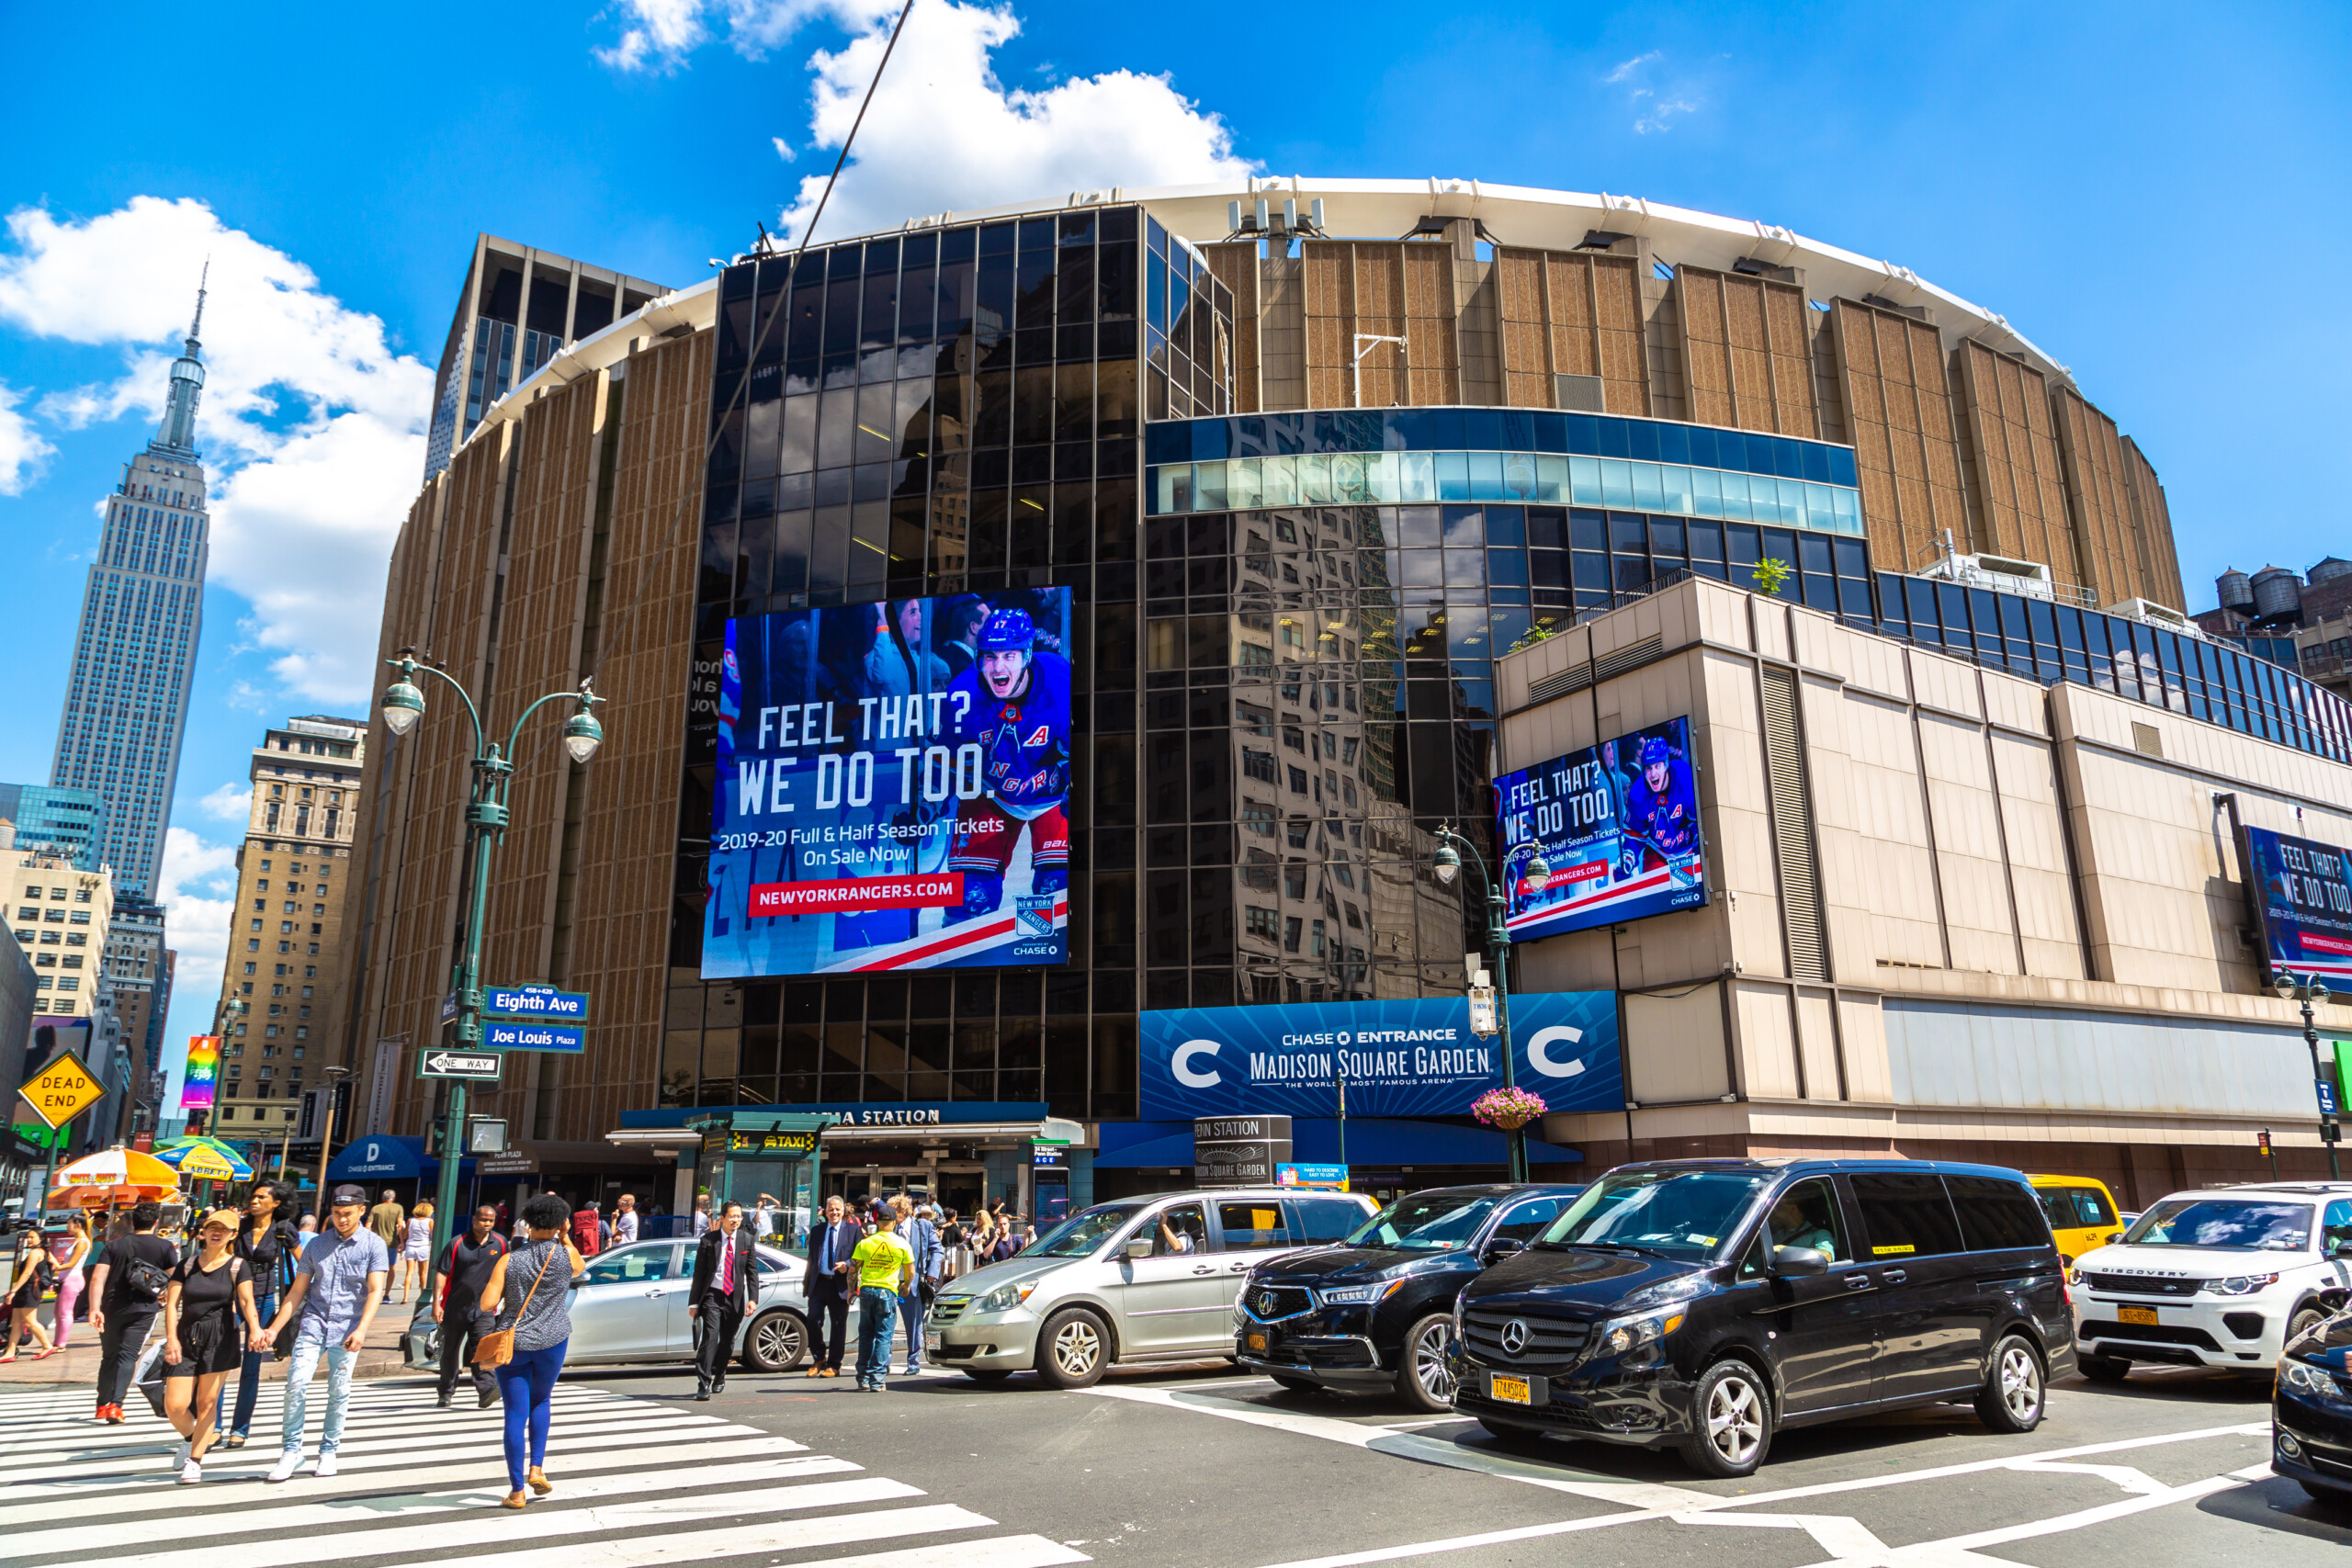 NOWY JORK, USA - Madison Square Garden w Nowym Jorku, USA, licencja: shutterstock/By S-F